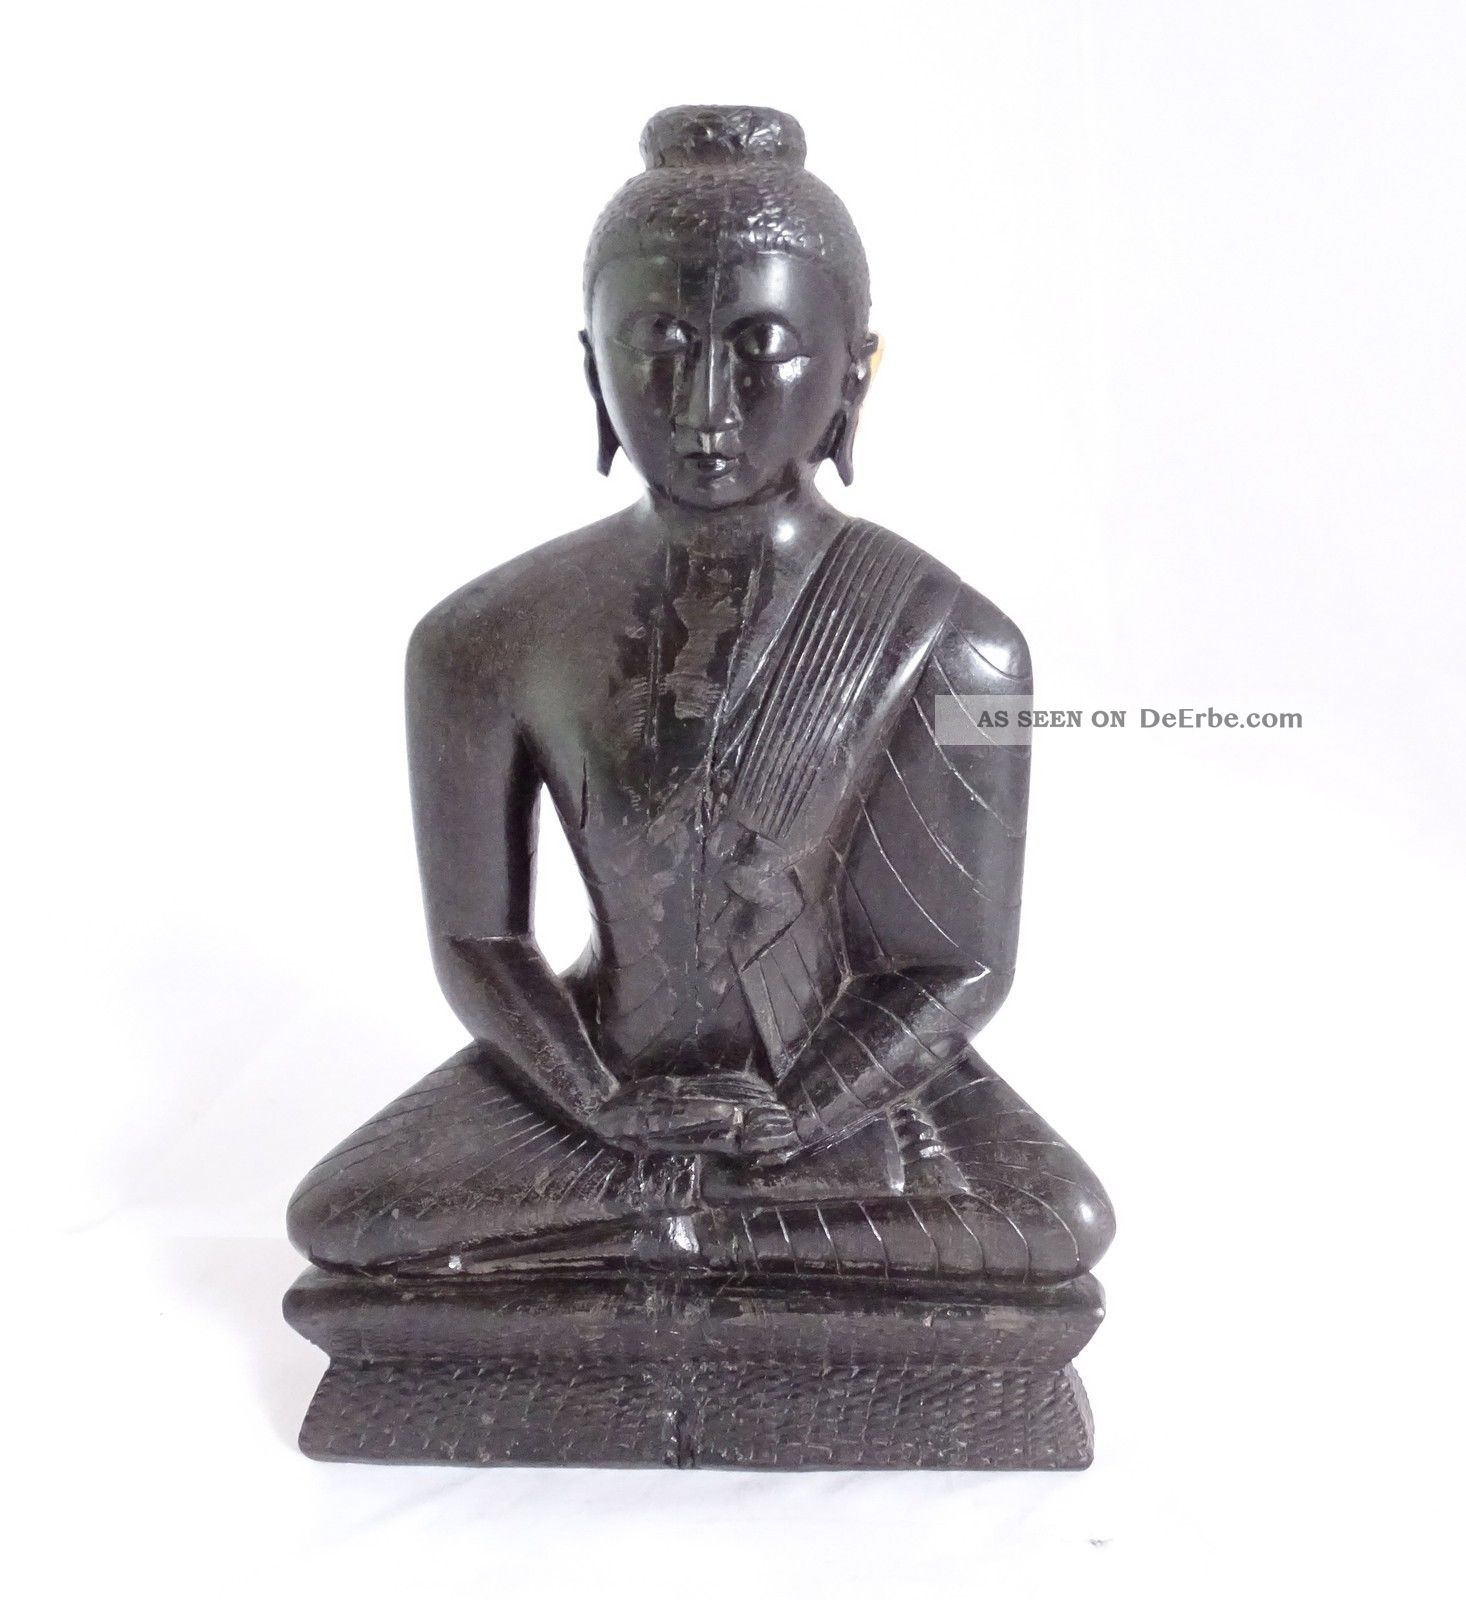 Sehr Schwere Wohl Ebenholz Figur Indisch Ganesha Shiva Hanuman Radha Krishna Entstehungszeit nach 1945 Bild